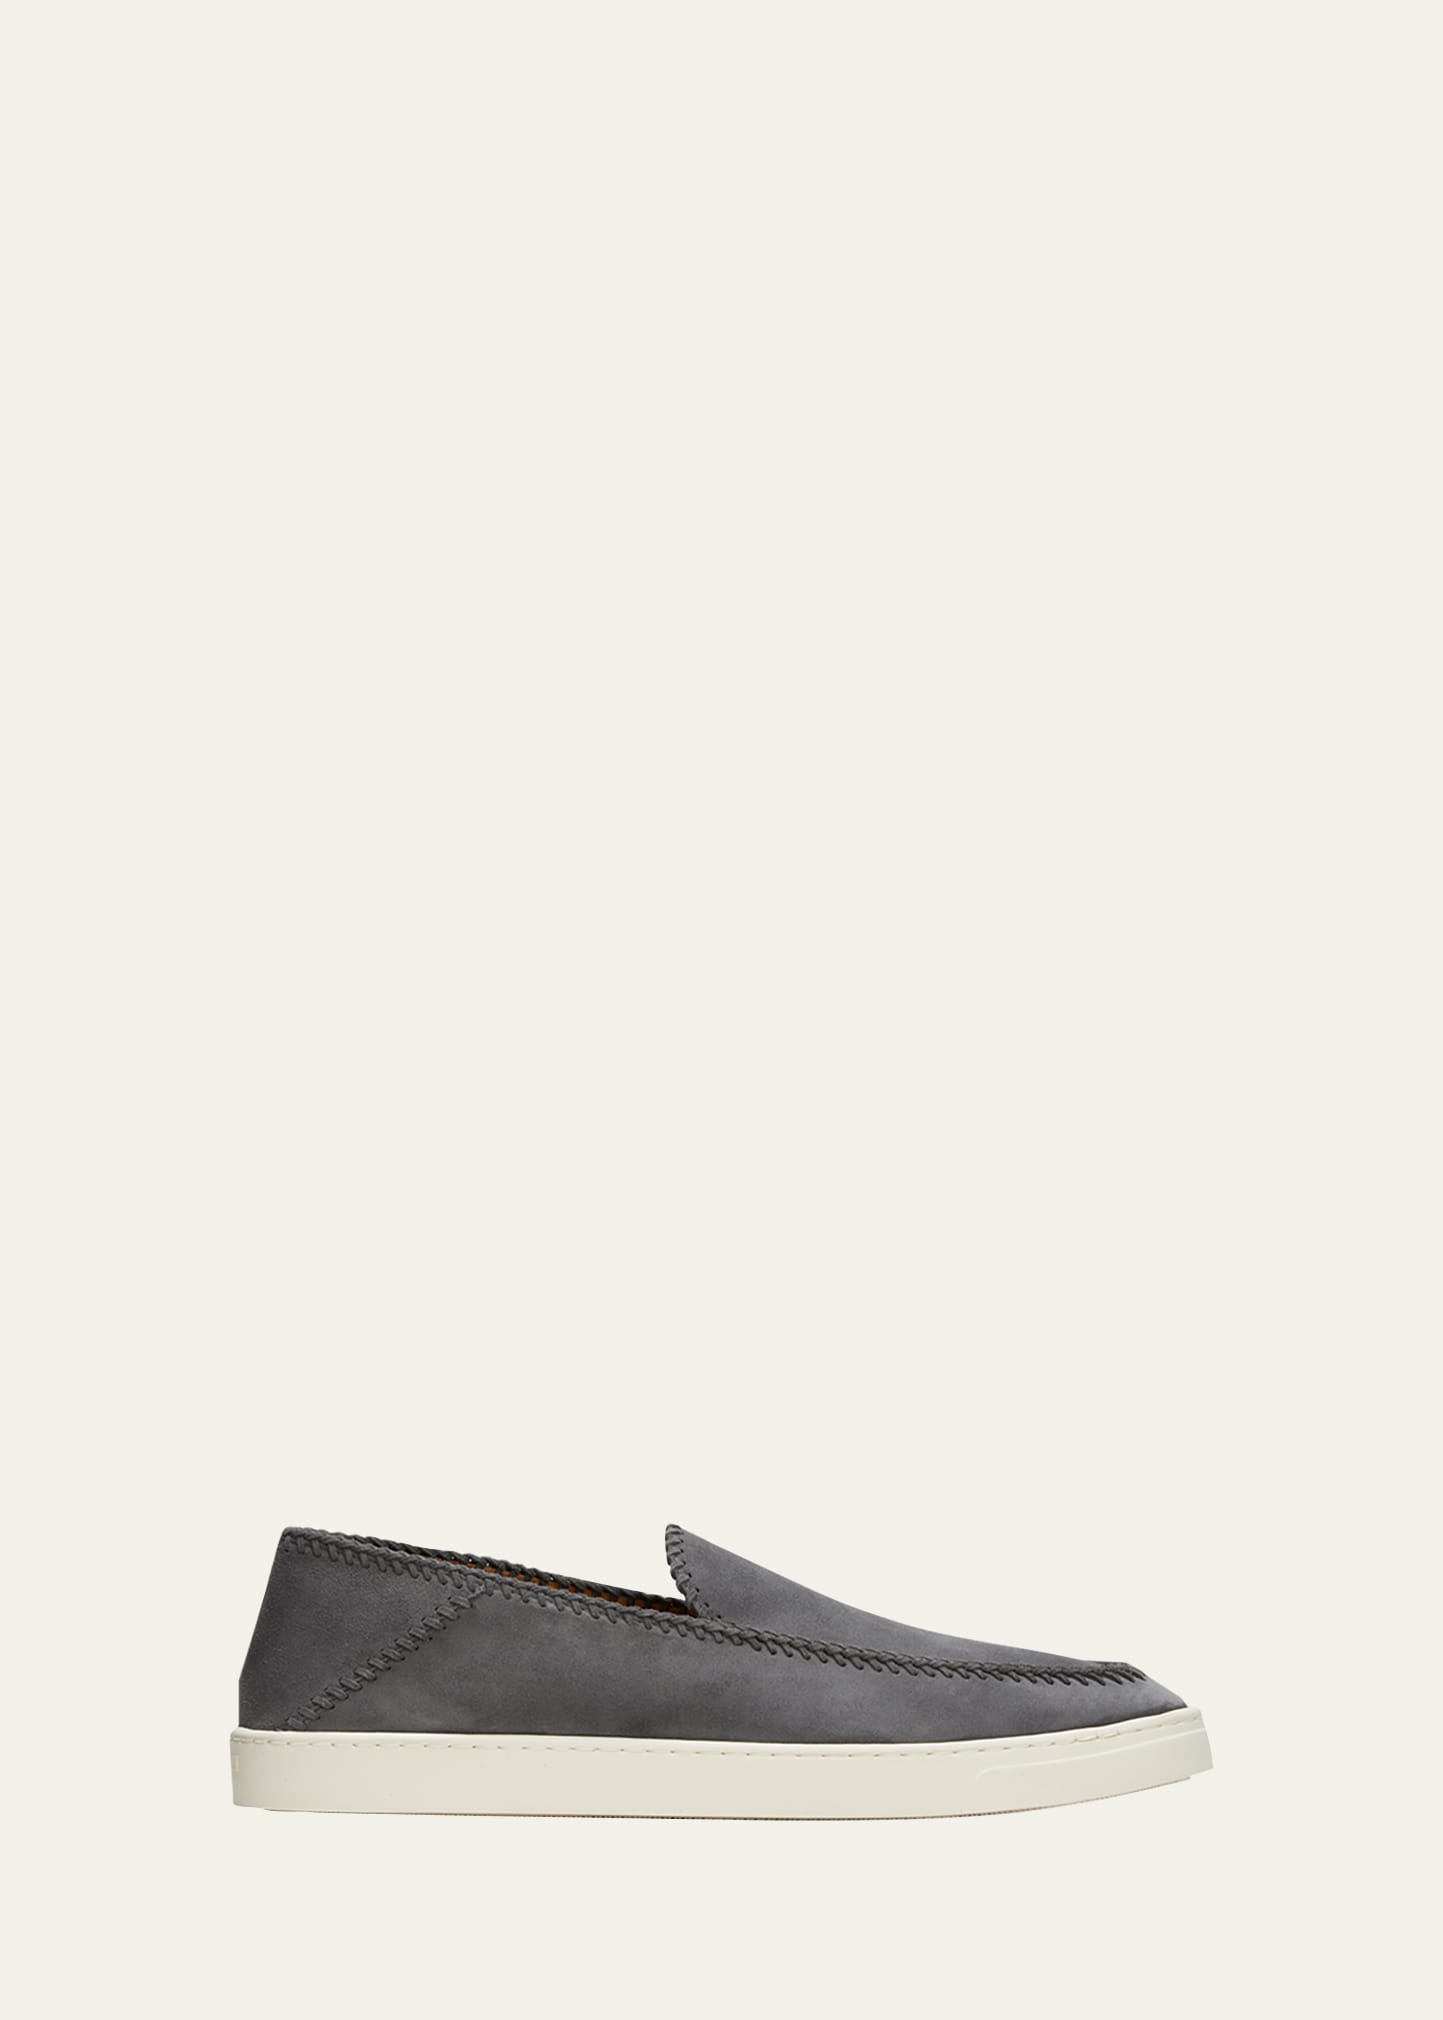 Shop Giorgio Armani Men's Suede Slip-on Sneakers In Anthracite